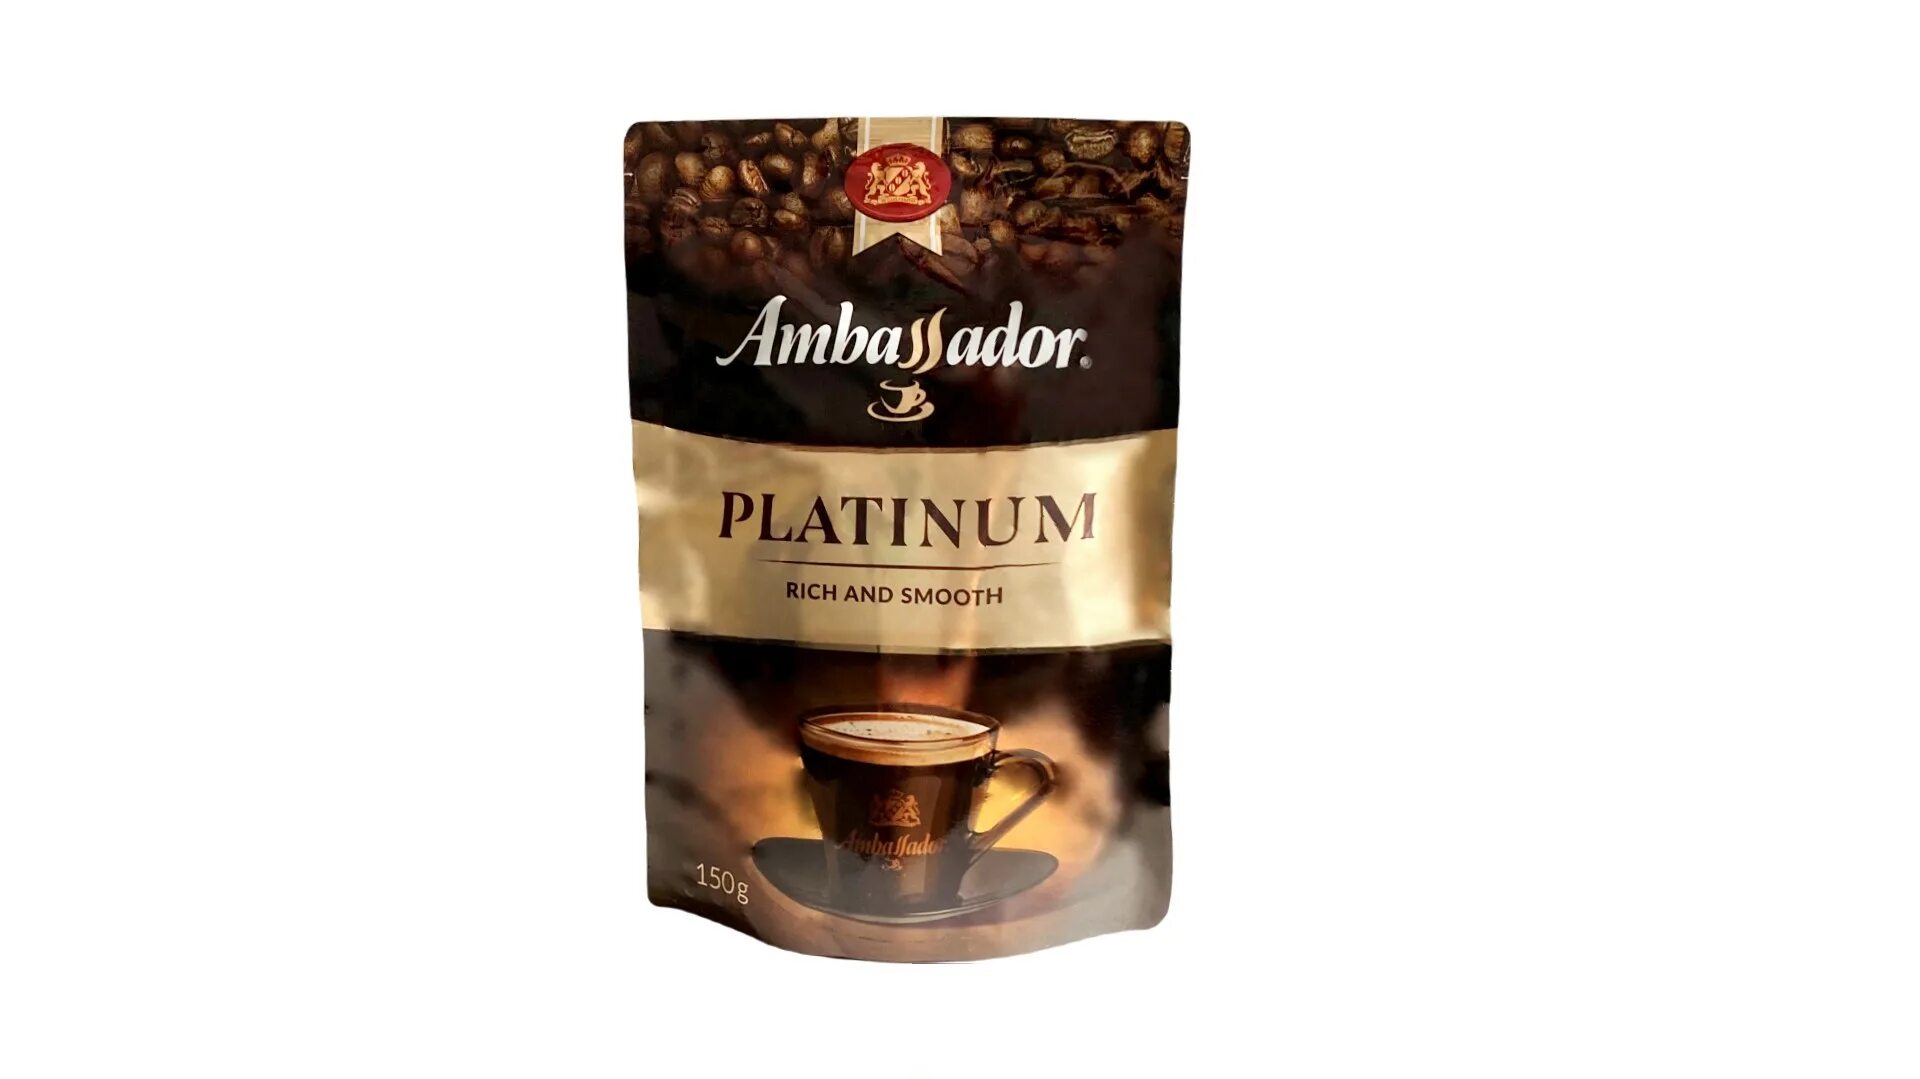 Кофе Ambassador Platinum растворимый 150г. Кофе Амбассадор платинум 150гр. М/У, шт. Кофе Амбассадор платинум 75г пакет. Кофе Амбассадор платинум м/у 75гр. Кофе амбассадор платинум 190